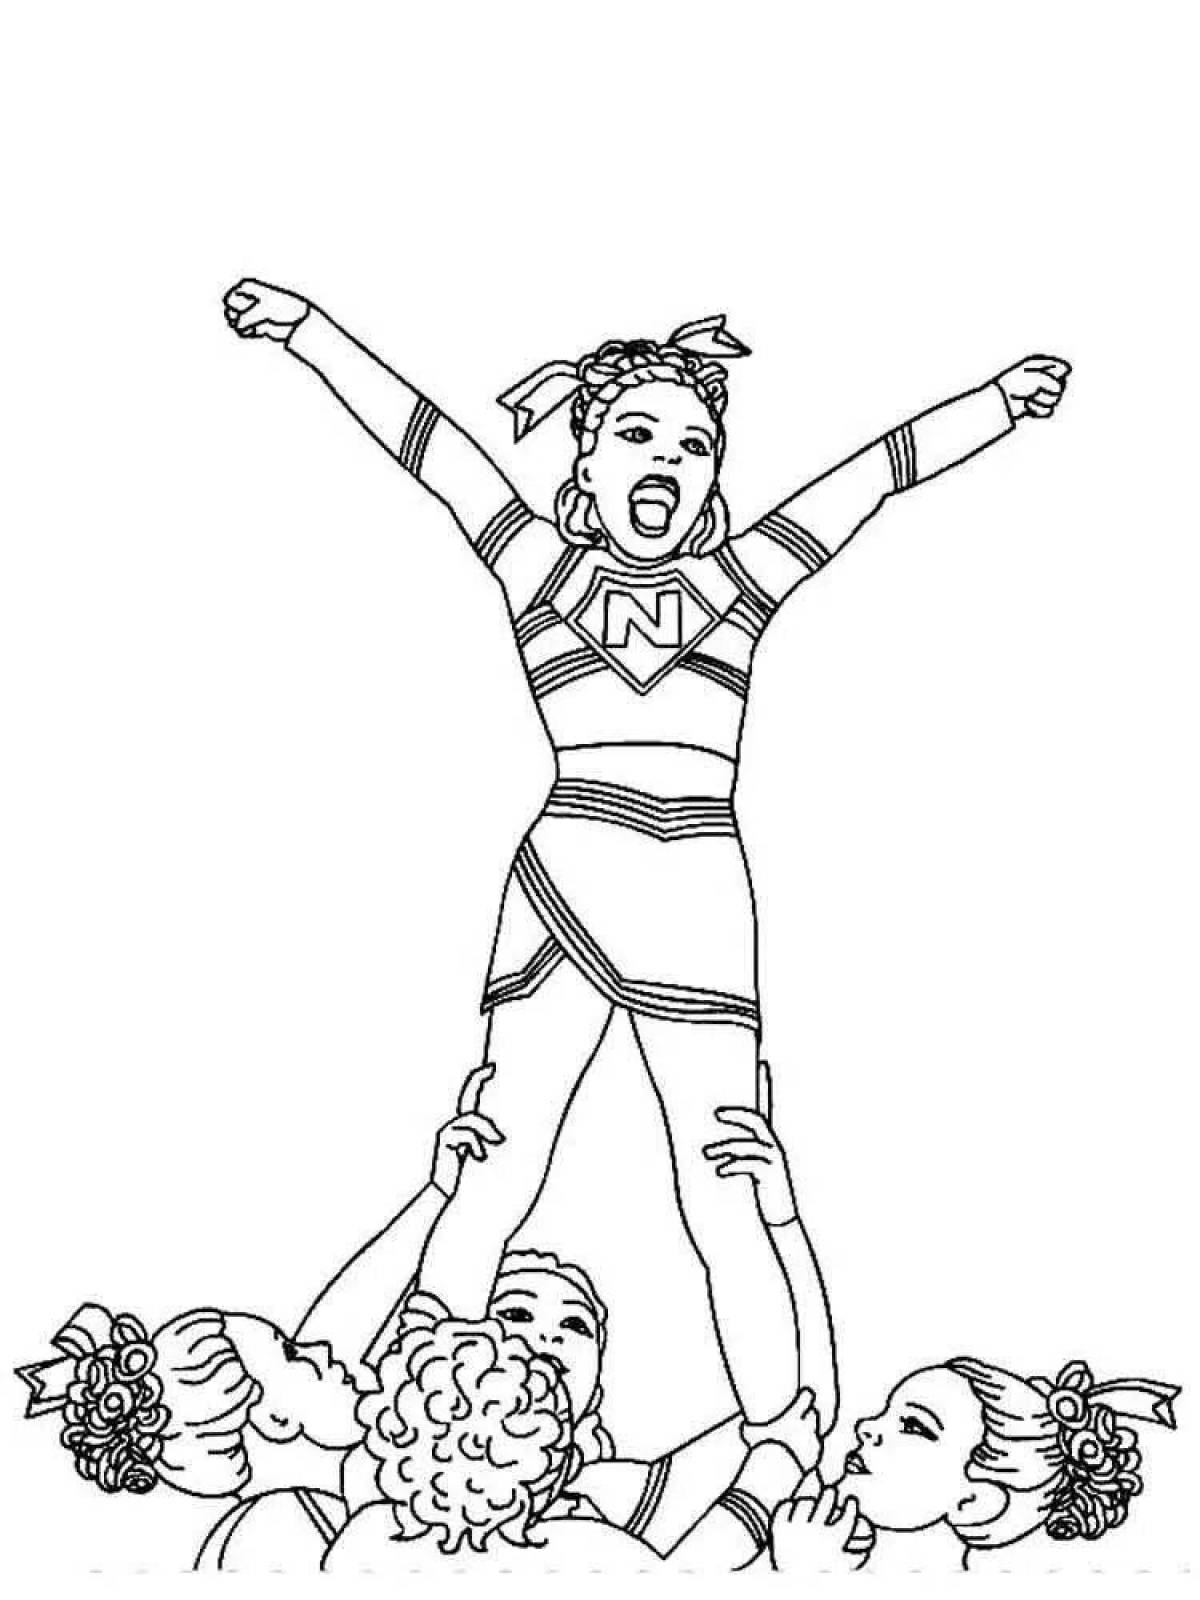 Joyful cheerleading coloring page